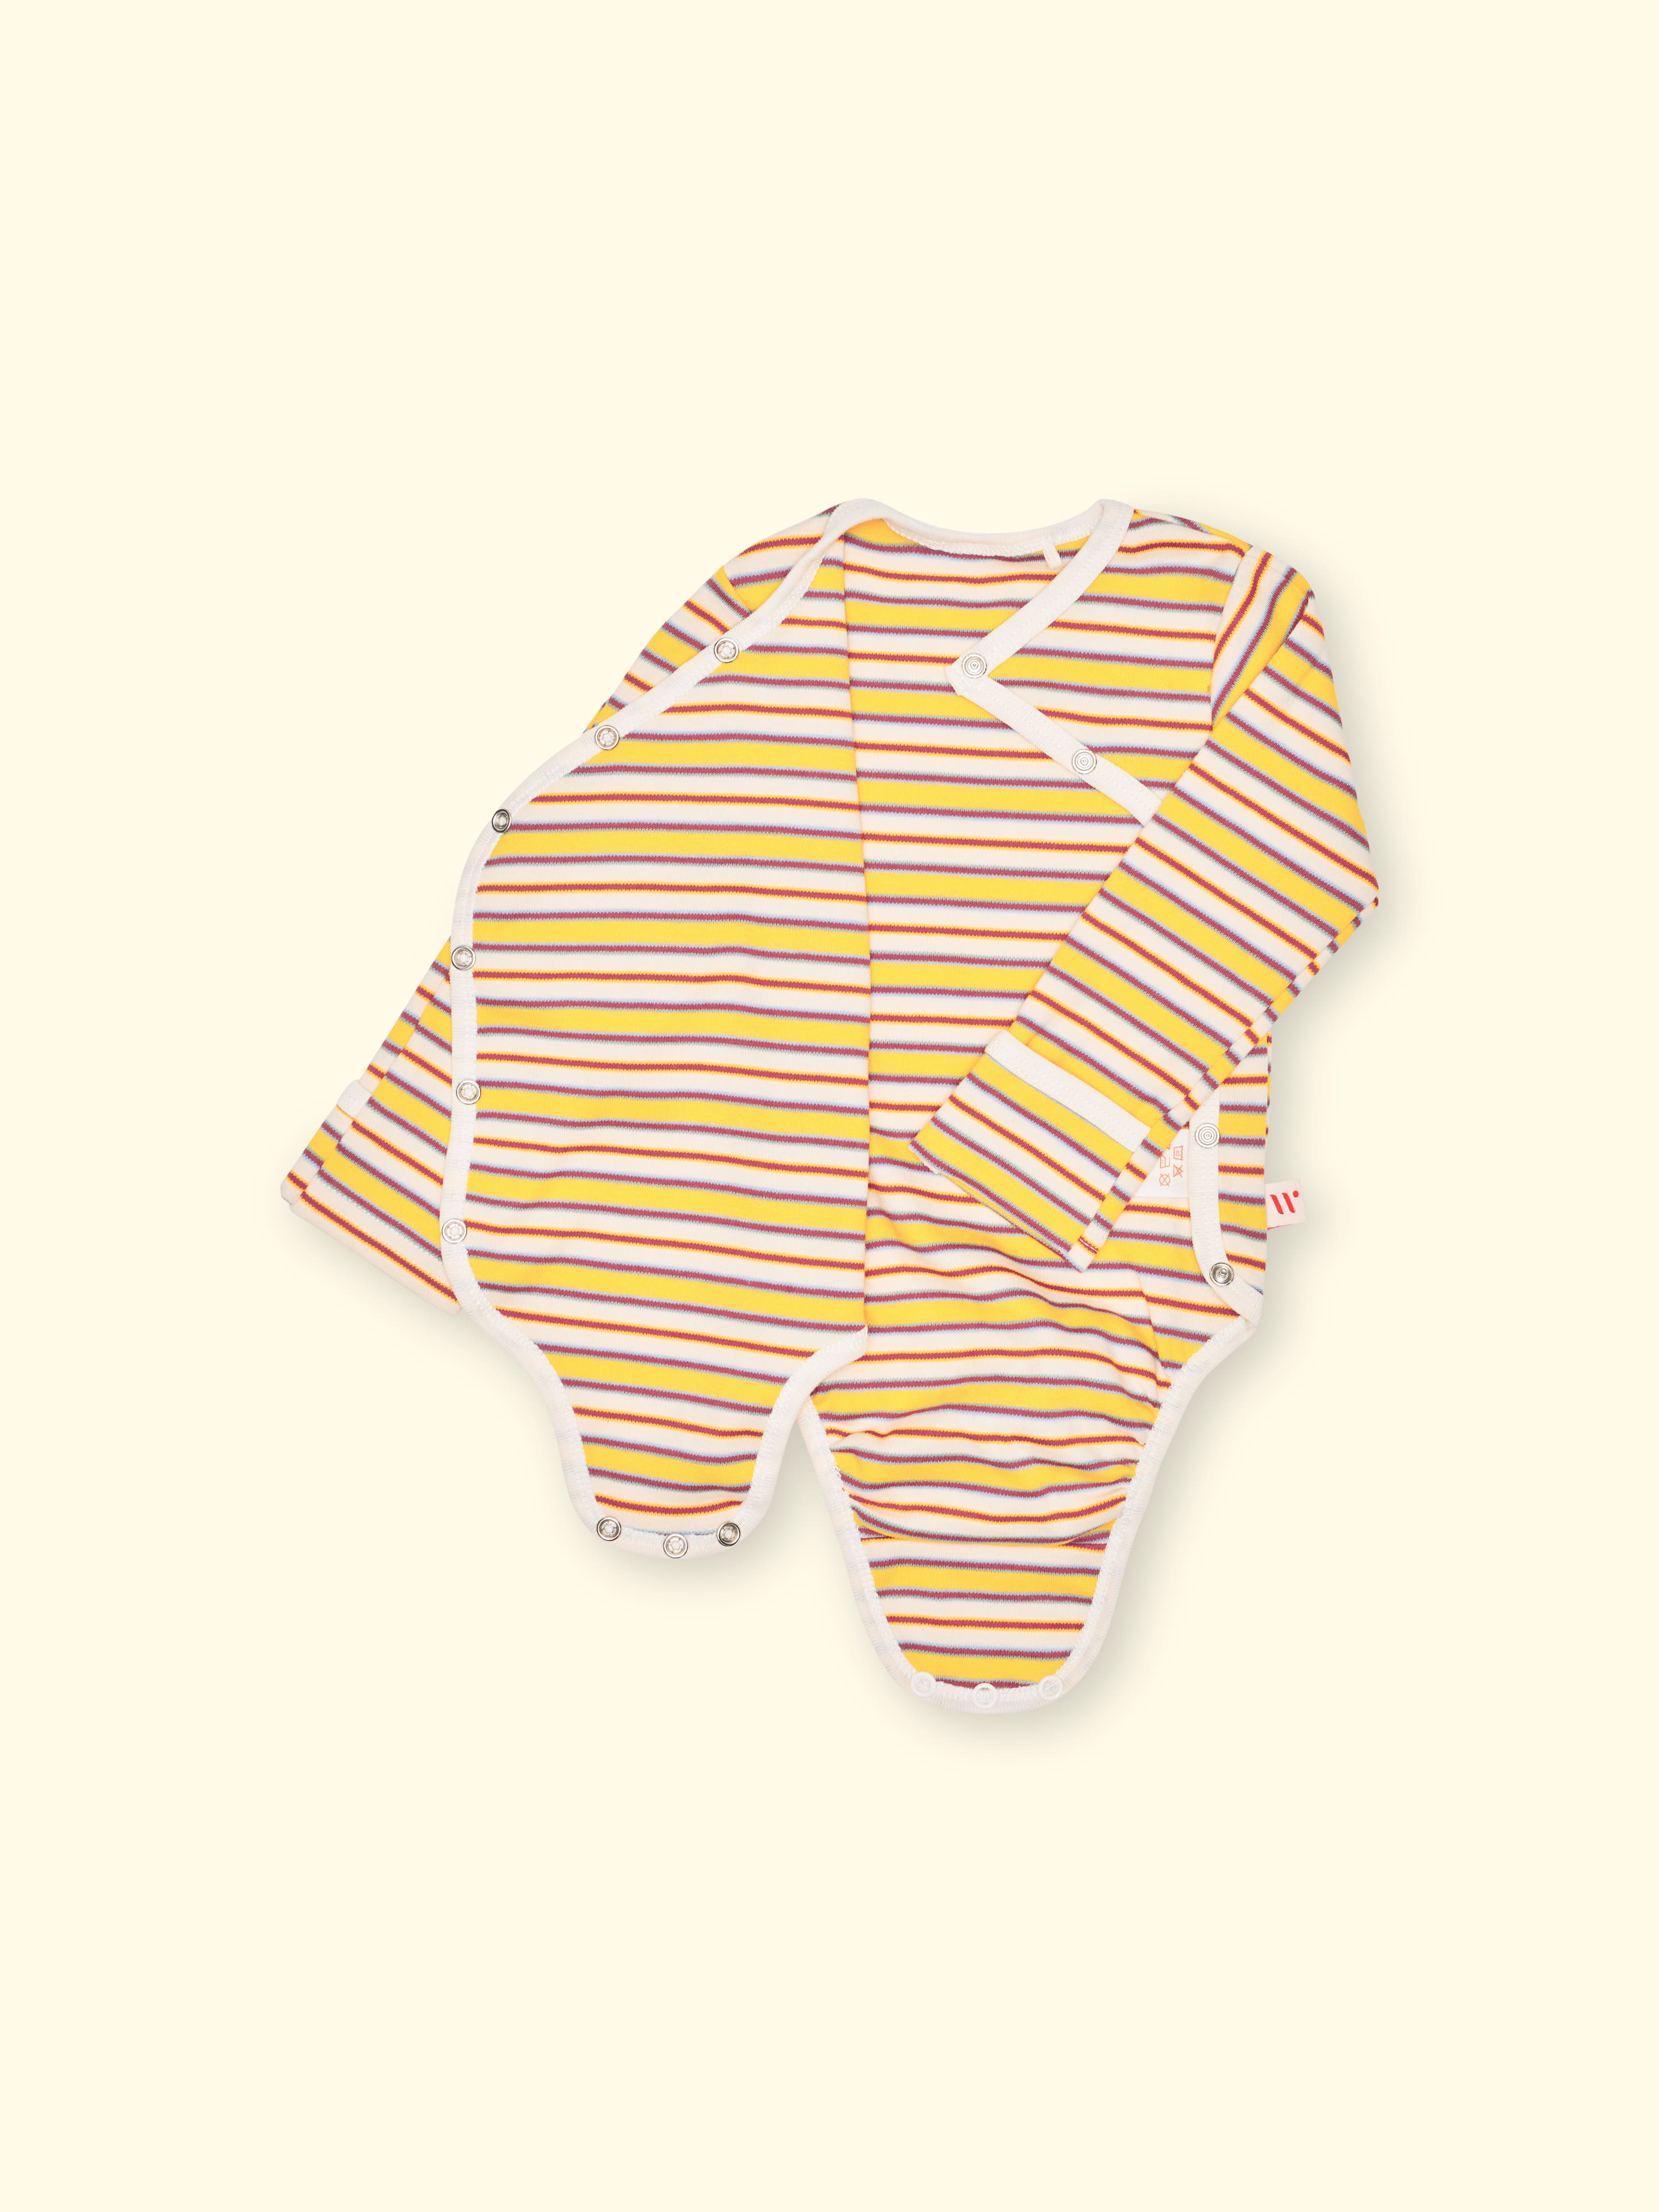 NUEVO - Enterizo con Abertura para Sondas Lumi - con protección contra rasguños y apertura en las mangas, para bebés prematuros y recién nacidos